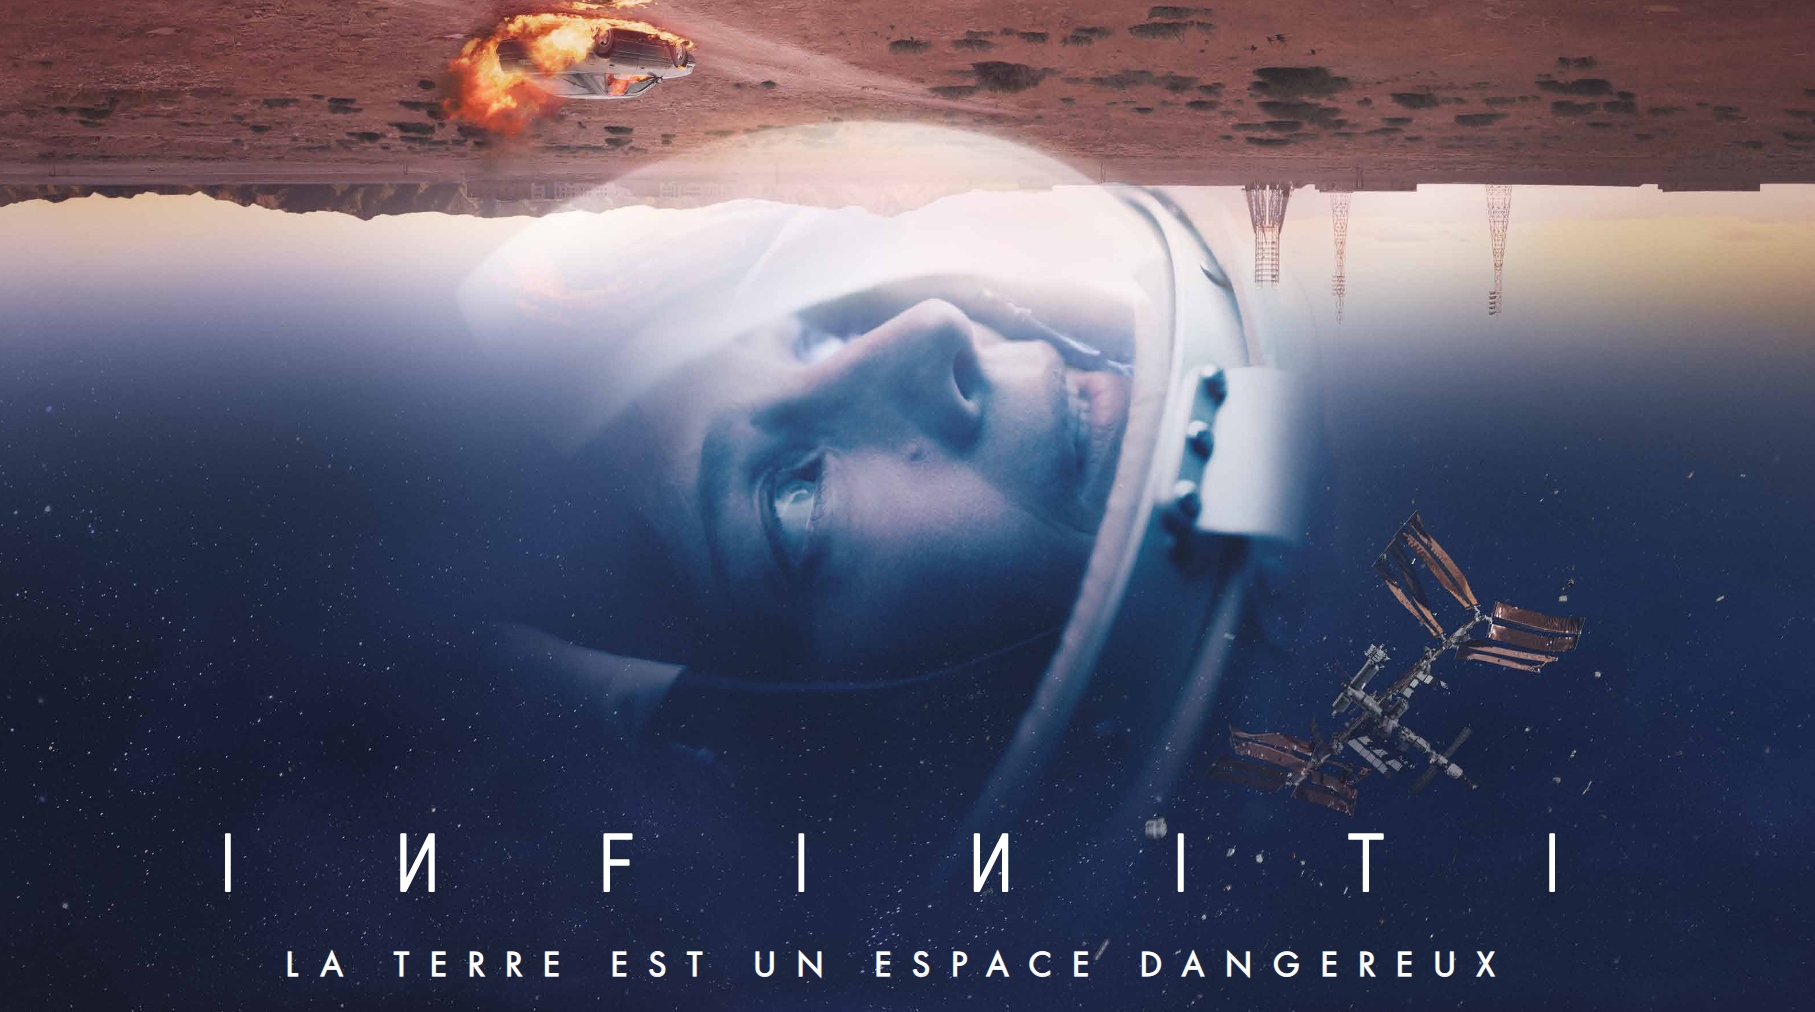 En avril, l'ISS ne répondra plus dans la série Infiniti de Canal+